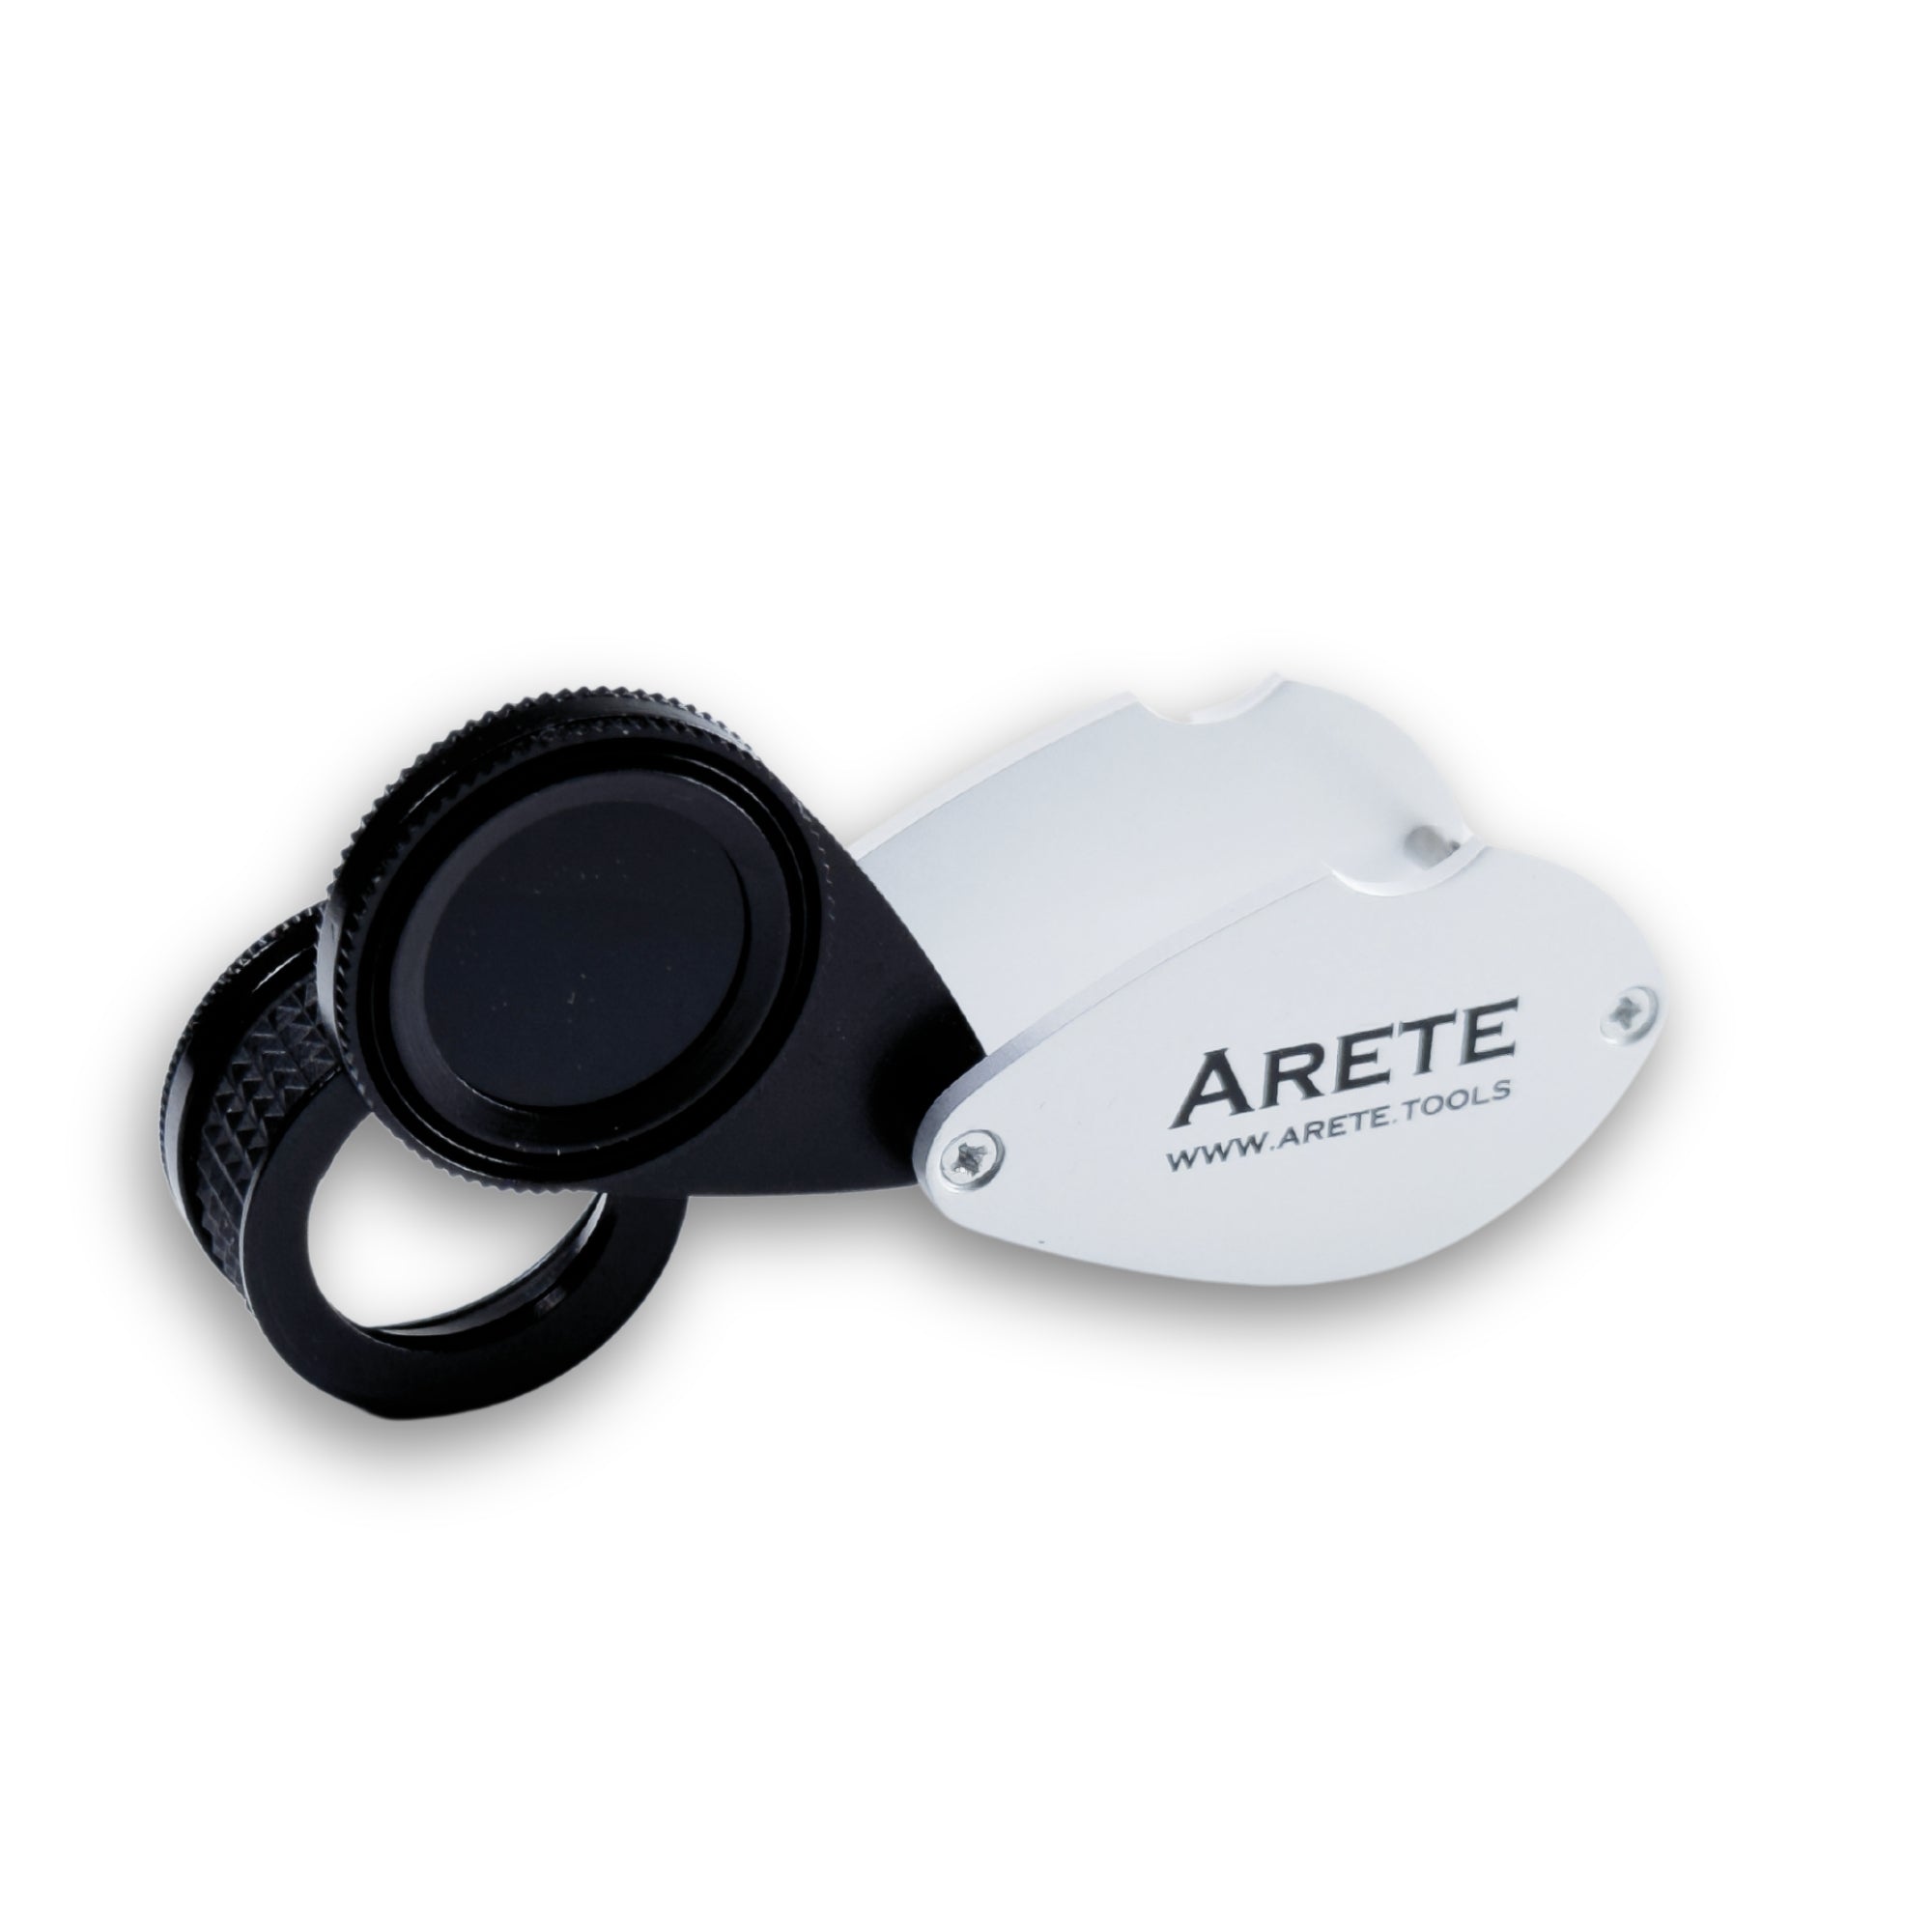 Chelsea filter suurenduse ja 15-kordse suurendusega – 21 mm, AreteTools